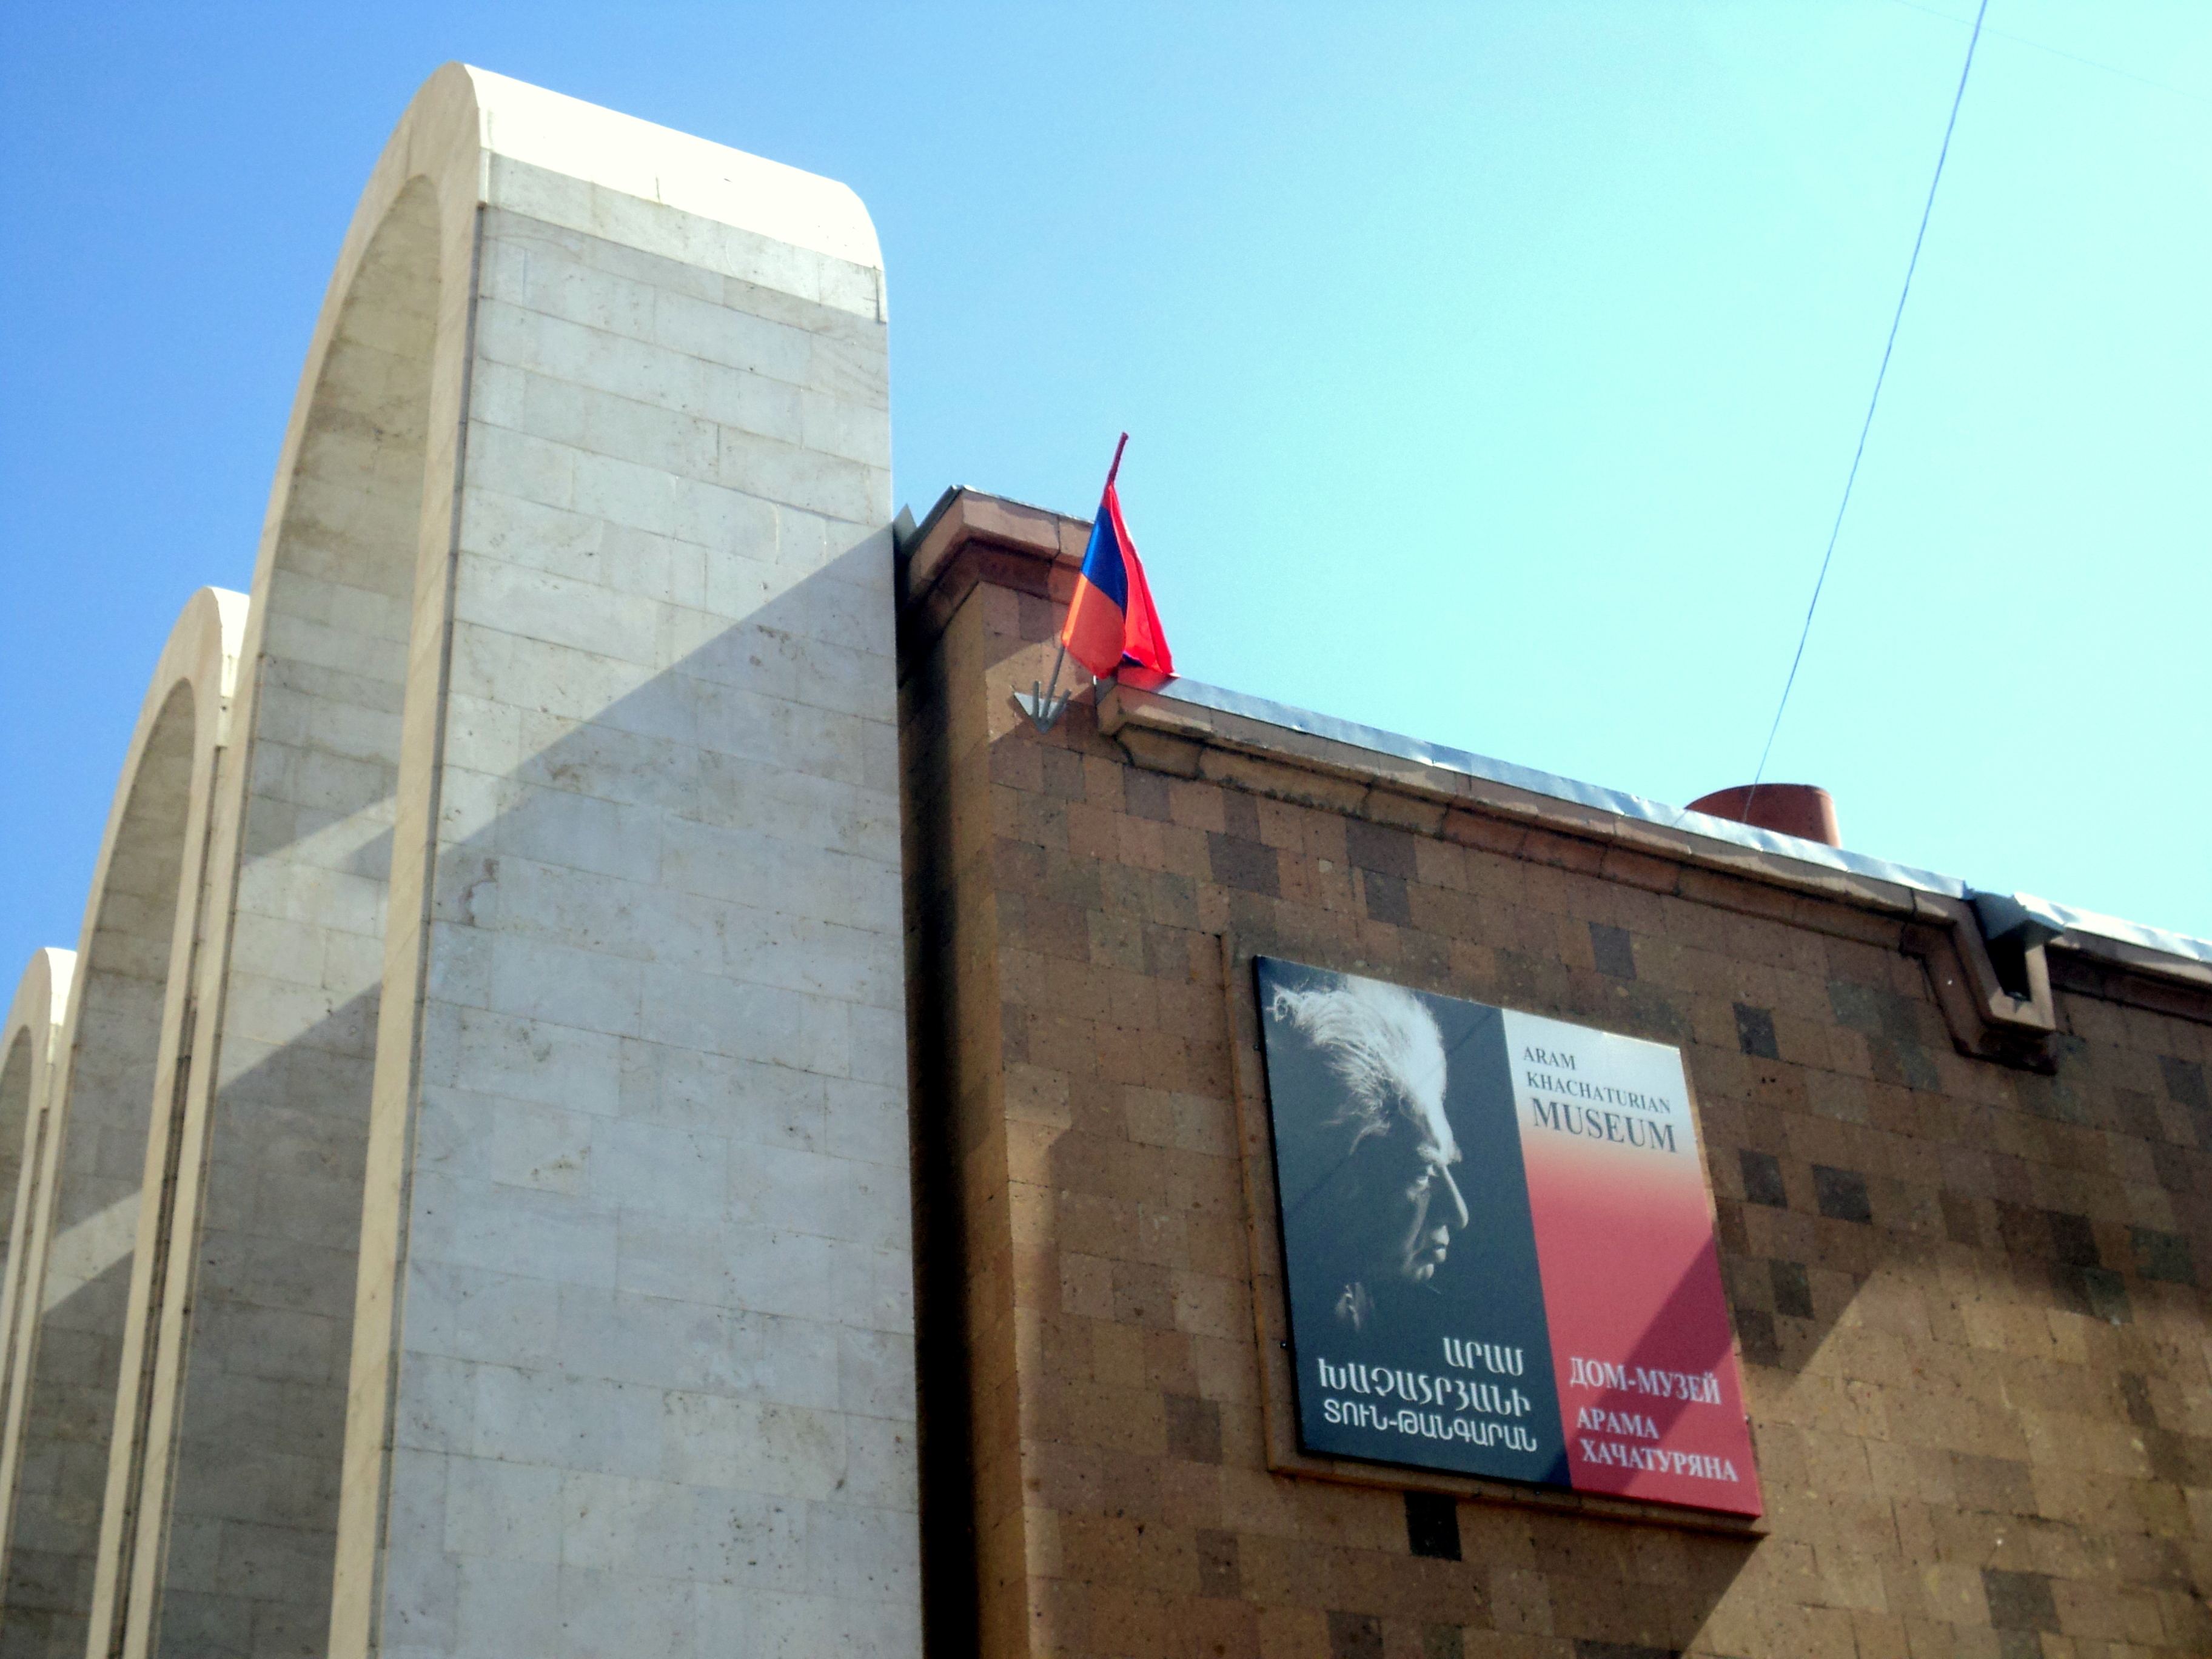 Տուն-թանգարանի այցելուները հնարավորություն ունեն տեսնելու Արամ Խաչատրյանի հետմահու դիմակը